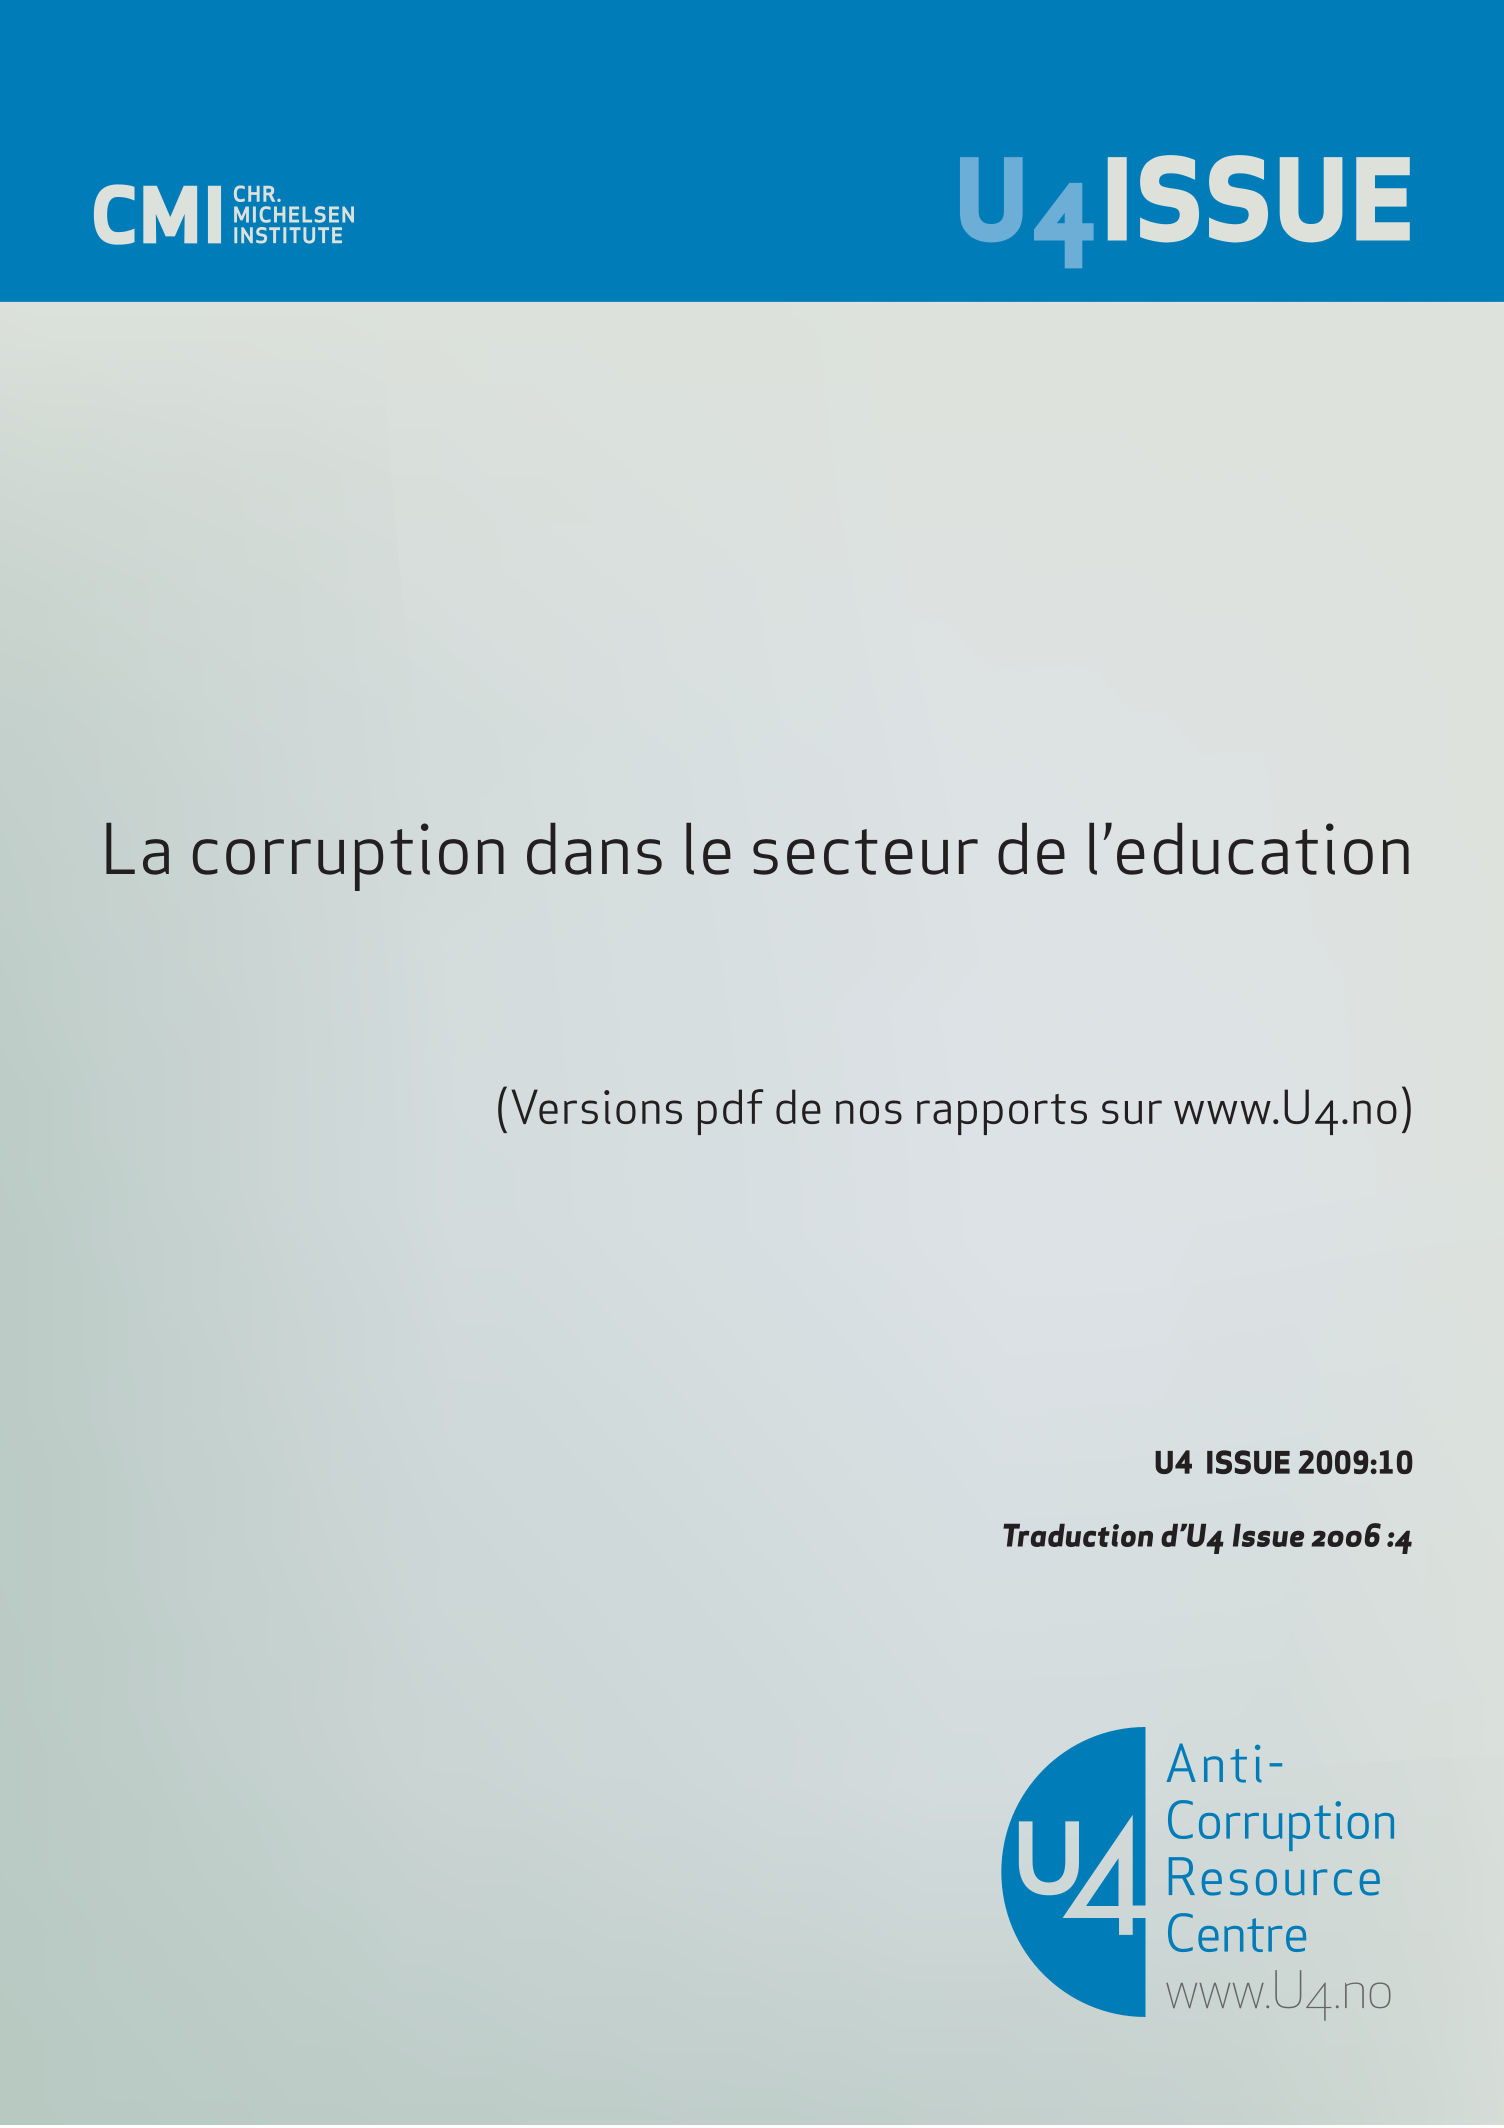 La corruption dans le secteur de l'éducation